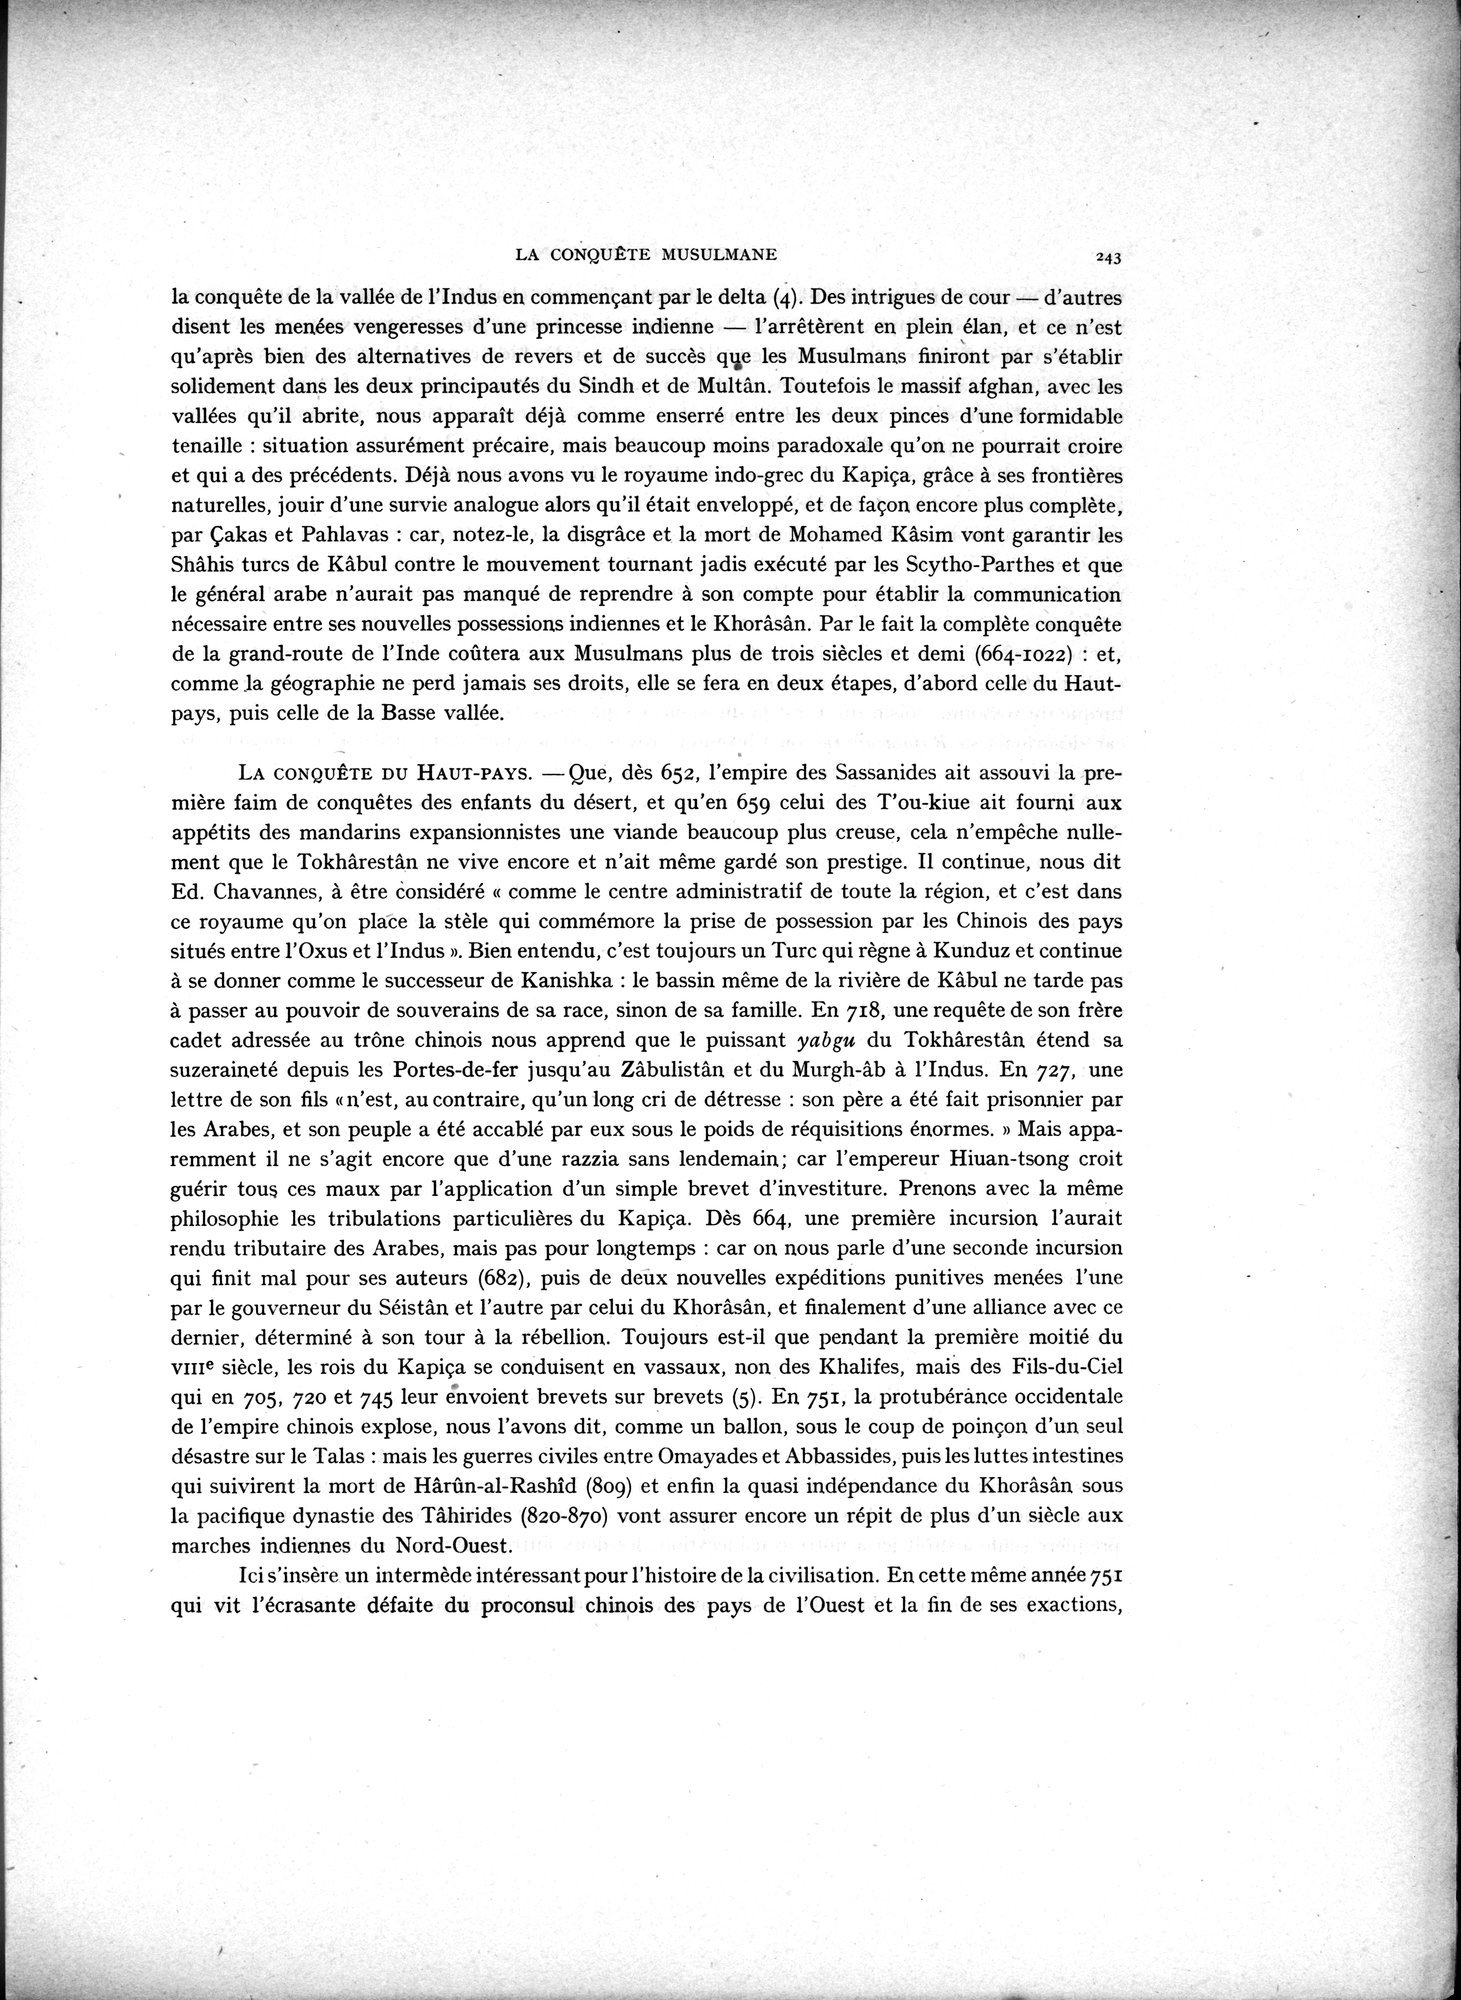 La Vieille Route de l'Inde de Bactres à Taxila : vol.2 / Page 77 (Grayscale High Resolution Image)